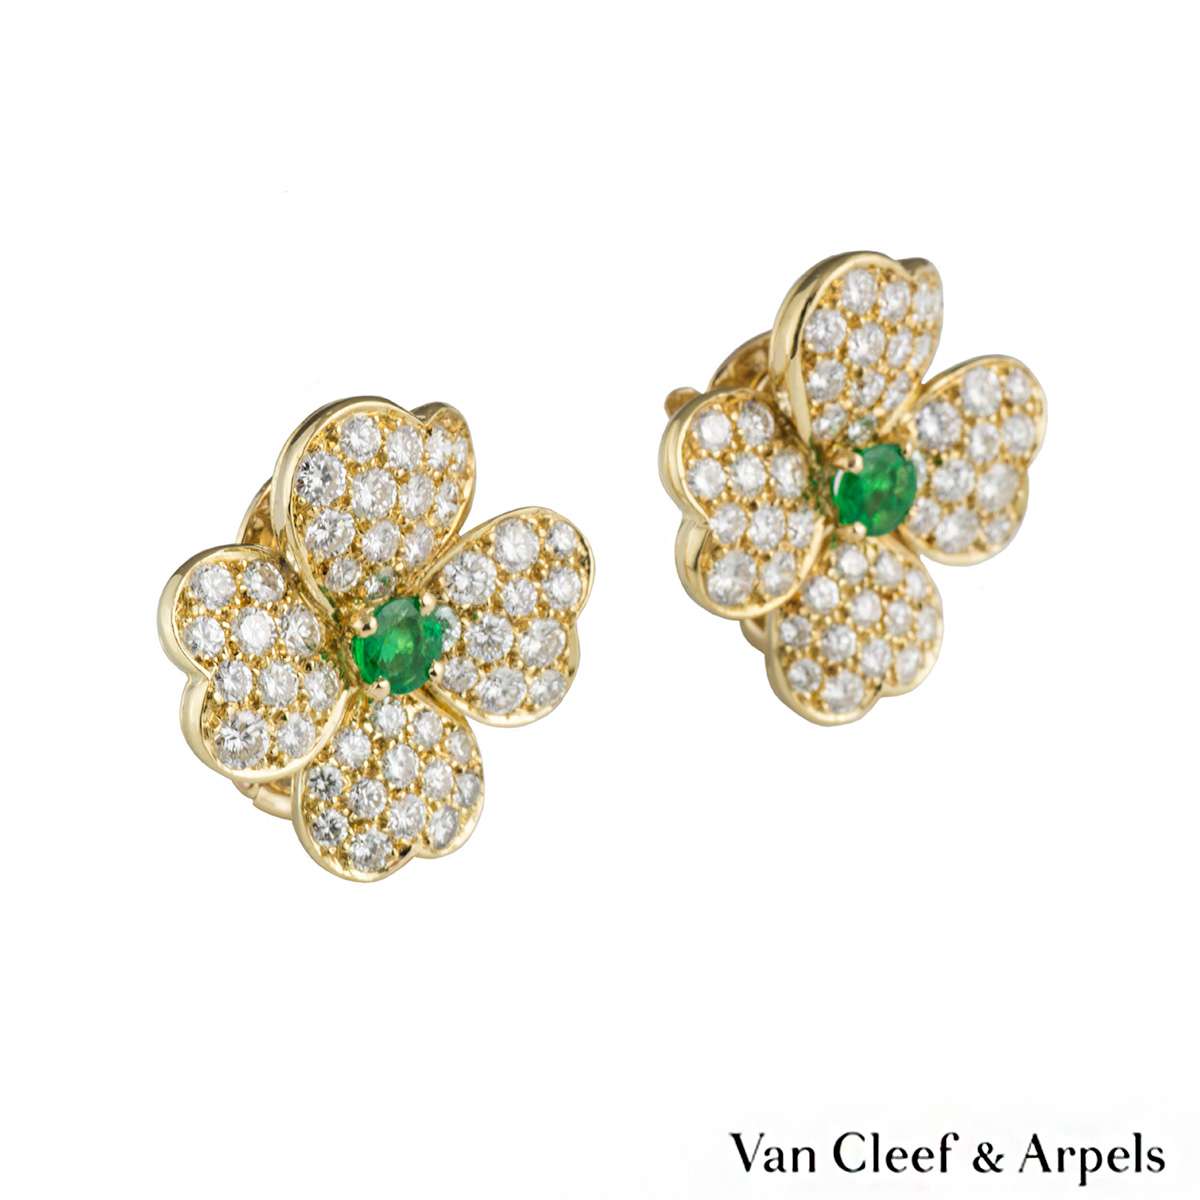 Van Cleef & Arpels Cosmos Diamond Emerald Brooch and Earrings 10.52ct G ...